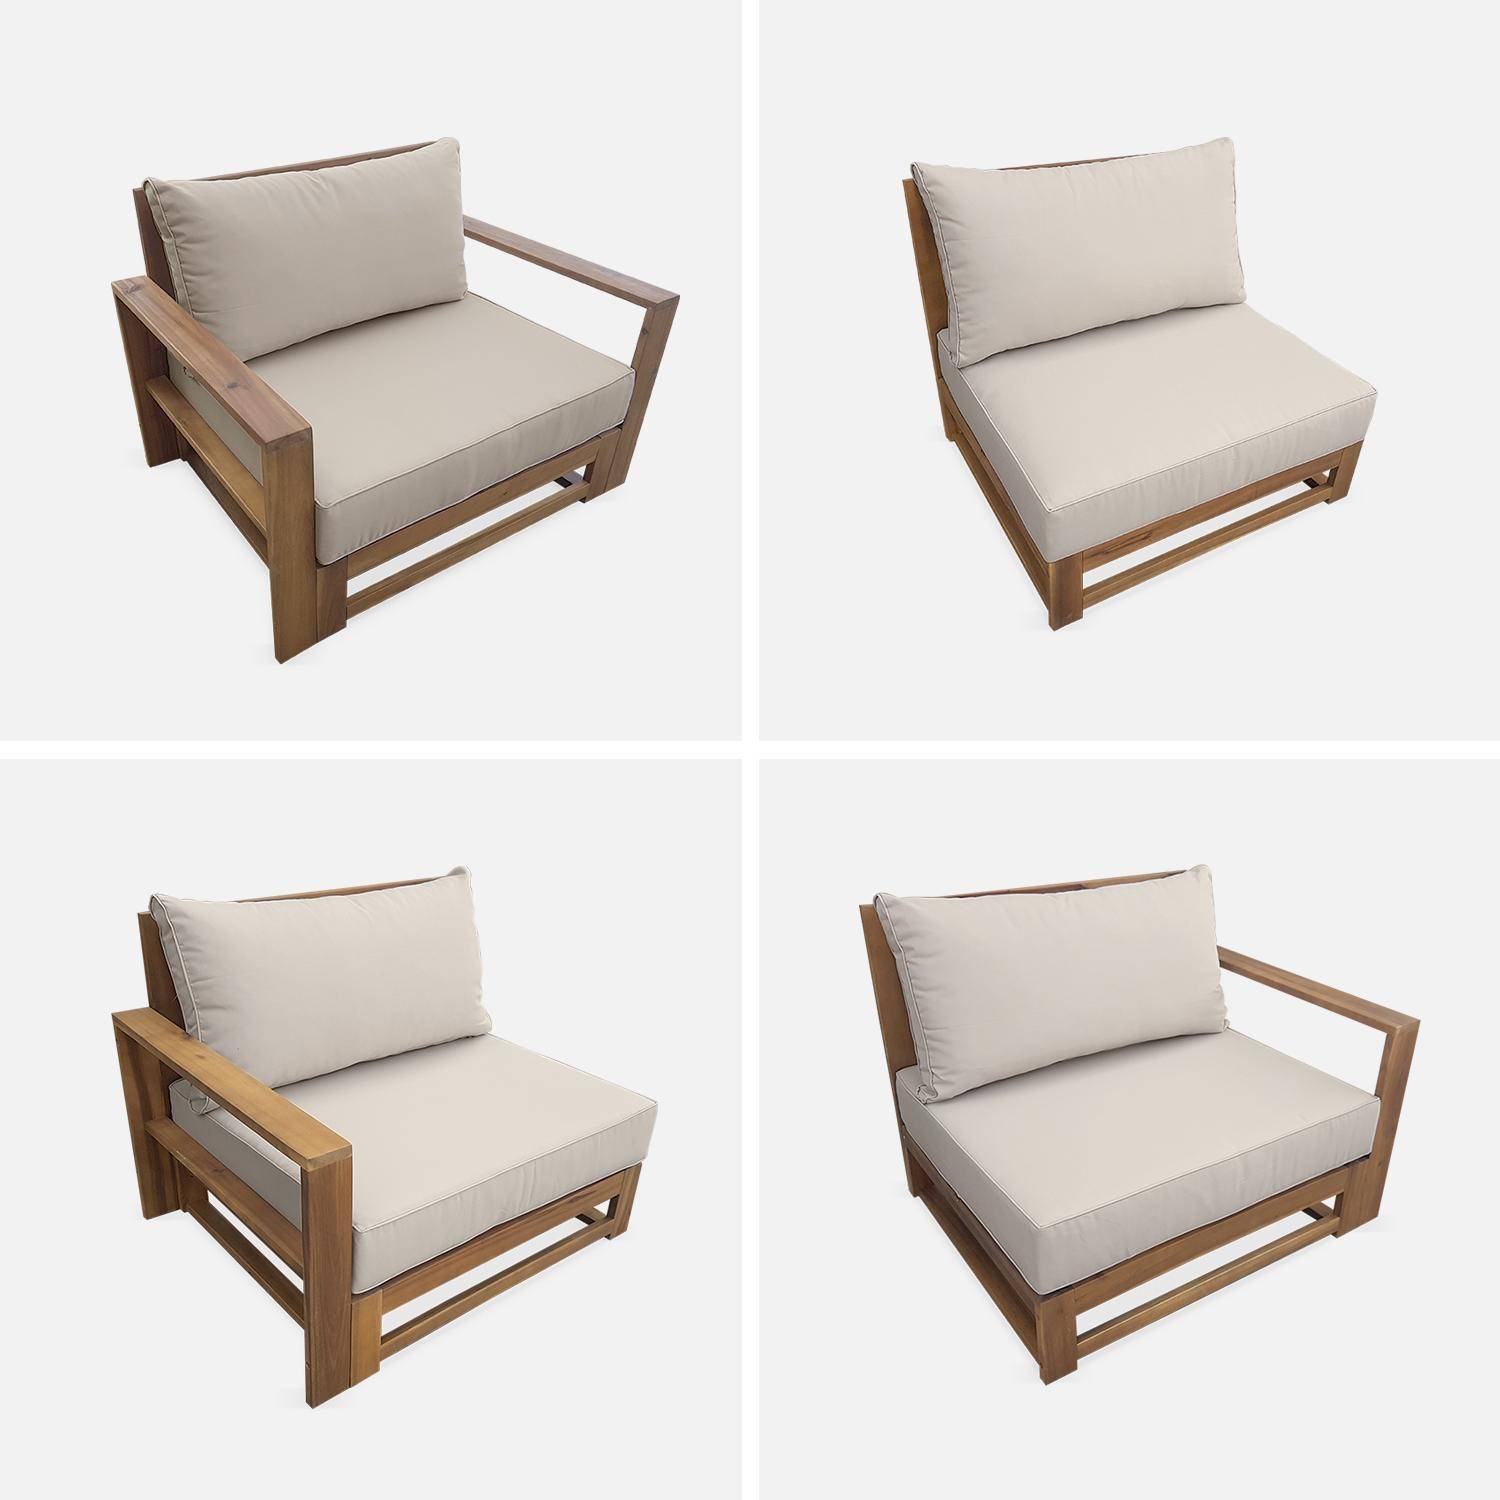 Gartengarnitur aus Holz 5 Sitze - Mendoza - beigefarbene Kissen, Sofa, Sessel und Couchtisch aus Akazie, 6 zusammenstellbare Teile, Design,sweeek,Photo6